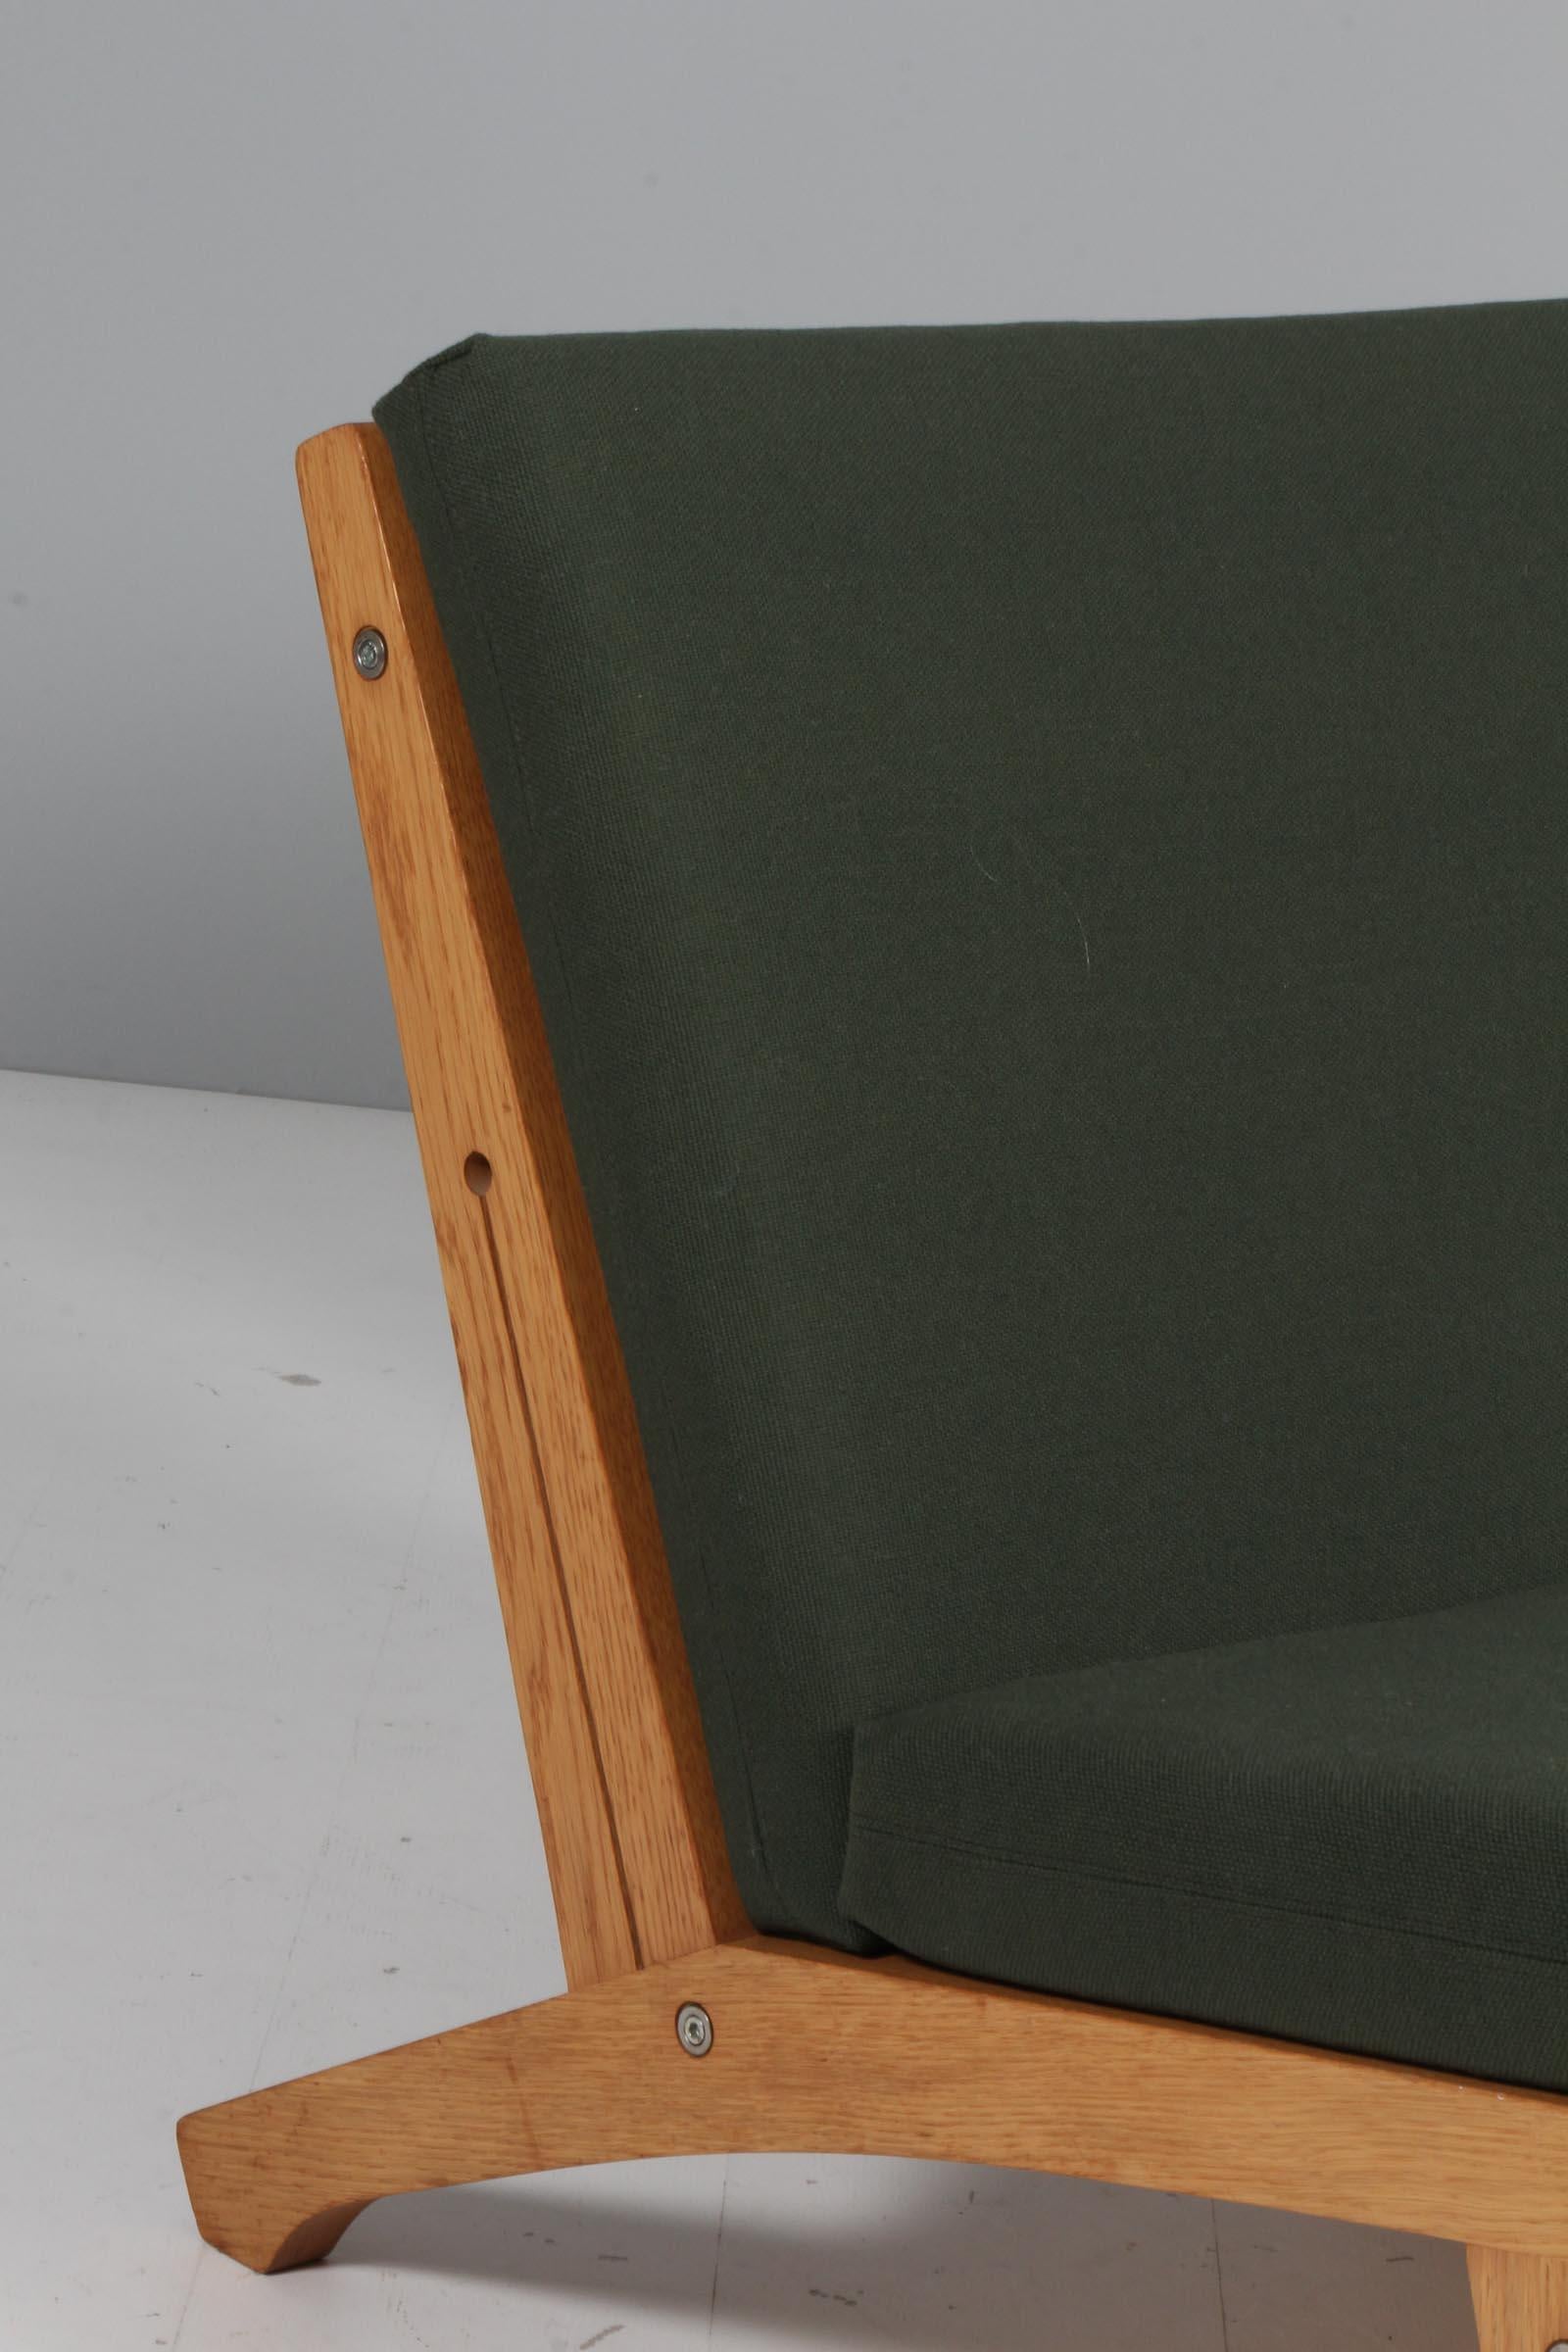 Danish Hans J. Wegner Lounge Chair, Model GE-370